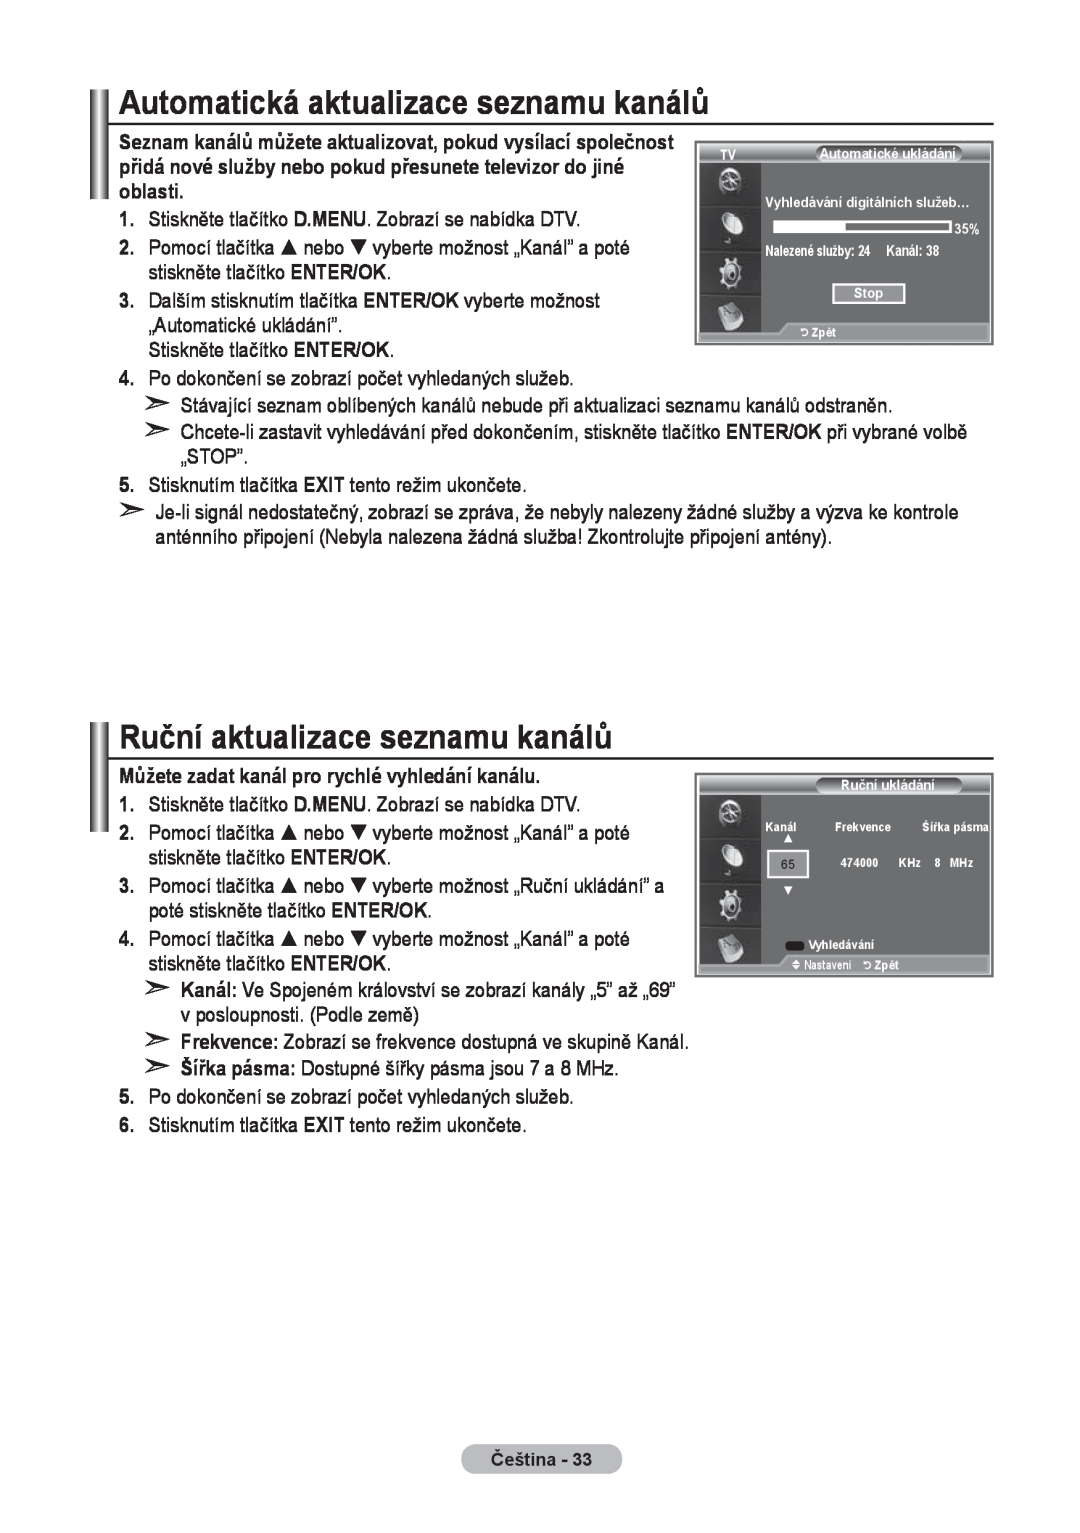 Samsung LE37R8, LE40R8, LE32R8 manual Automatická aktualizace seznamu kanálů, Ruční aktualizace seznamu kanálů 